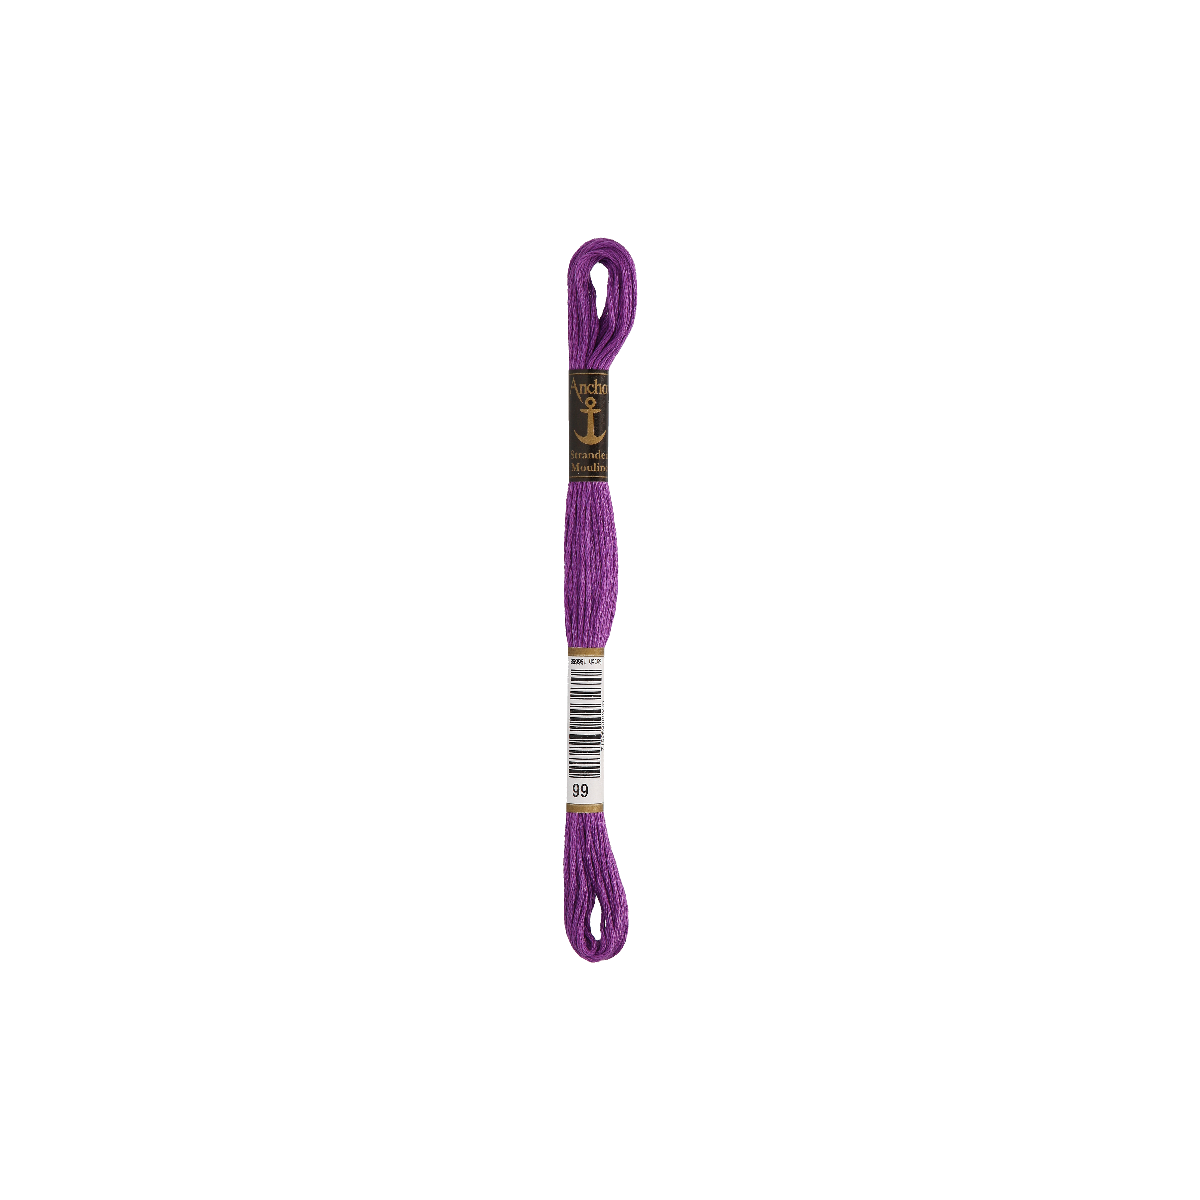 Anchor Sticktwist 8m, viola, cotone, colore 99, 6 fili